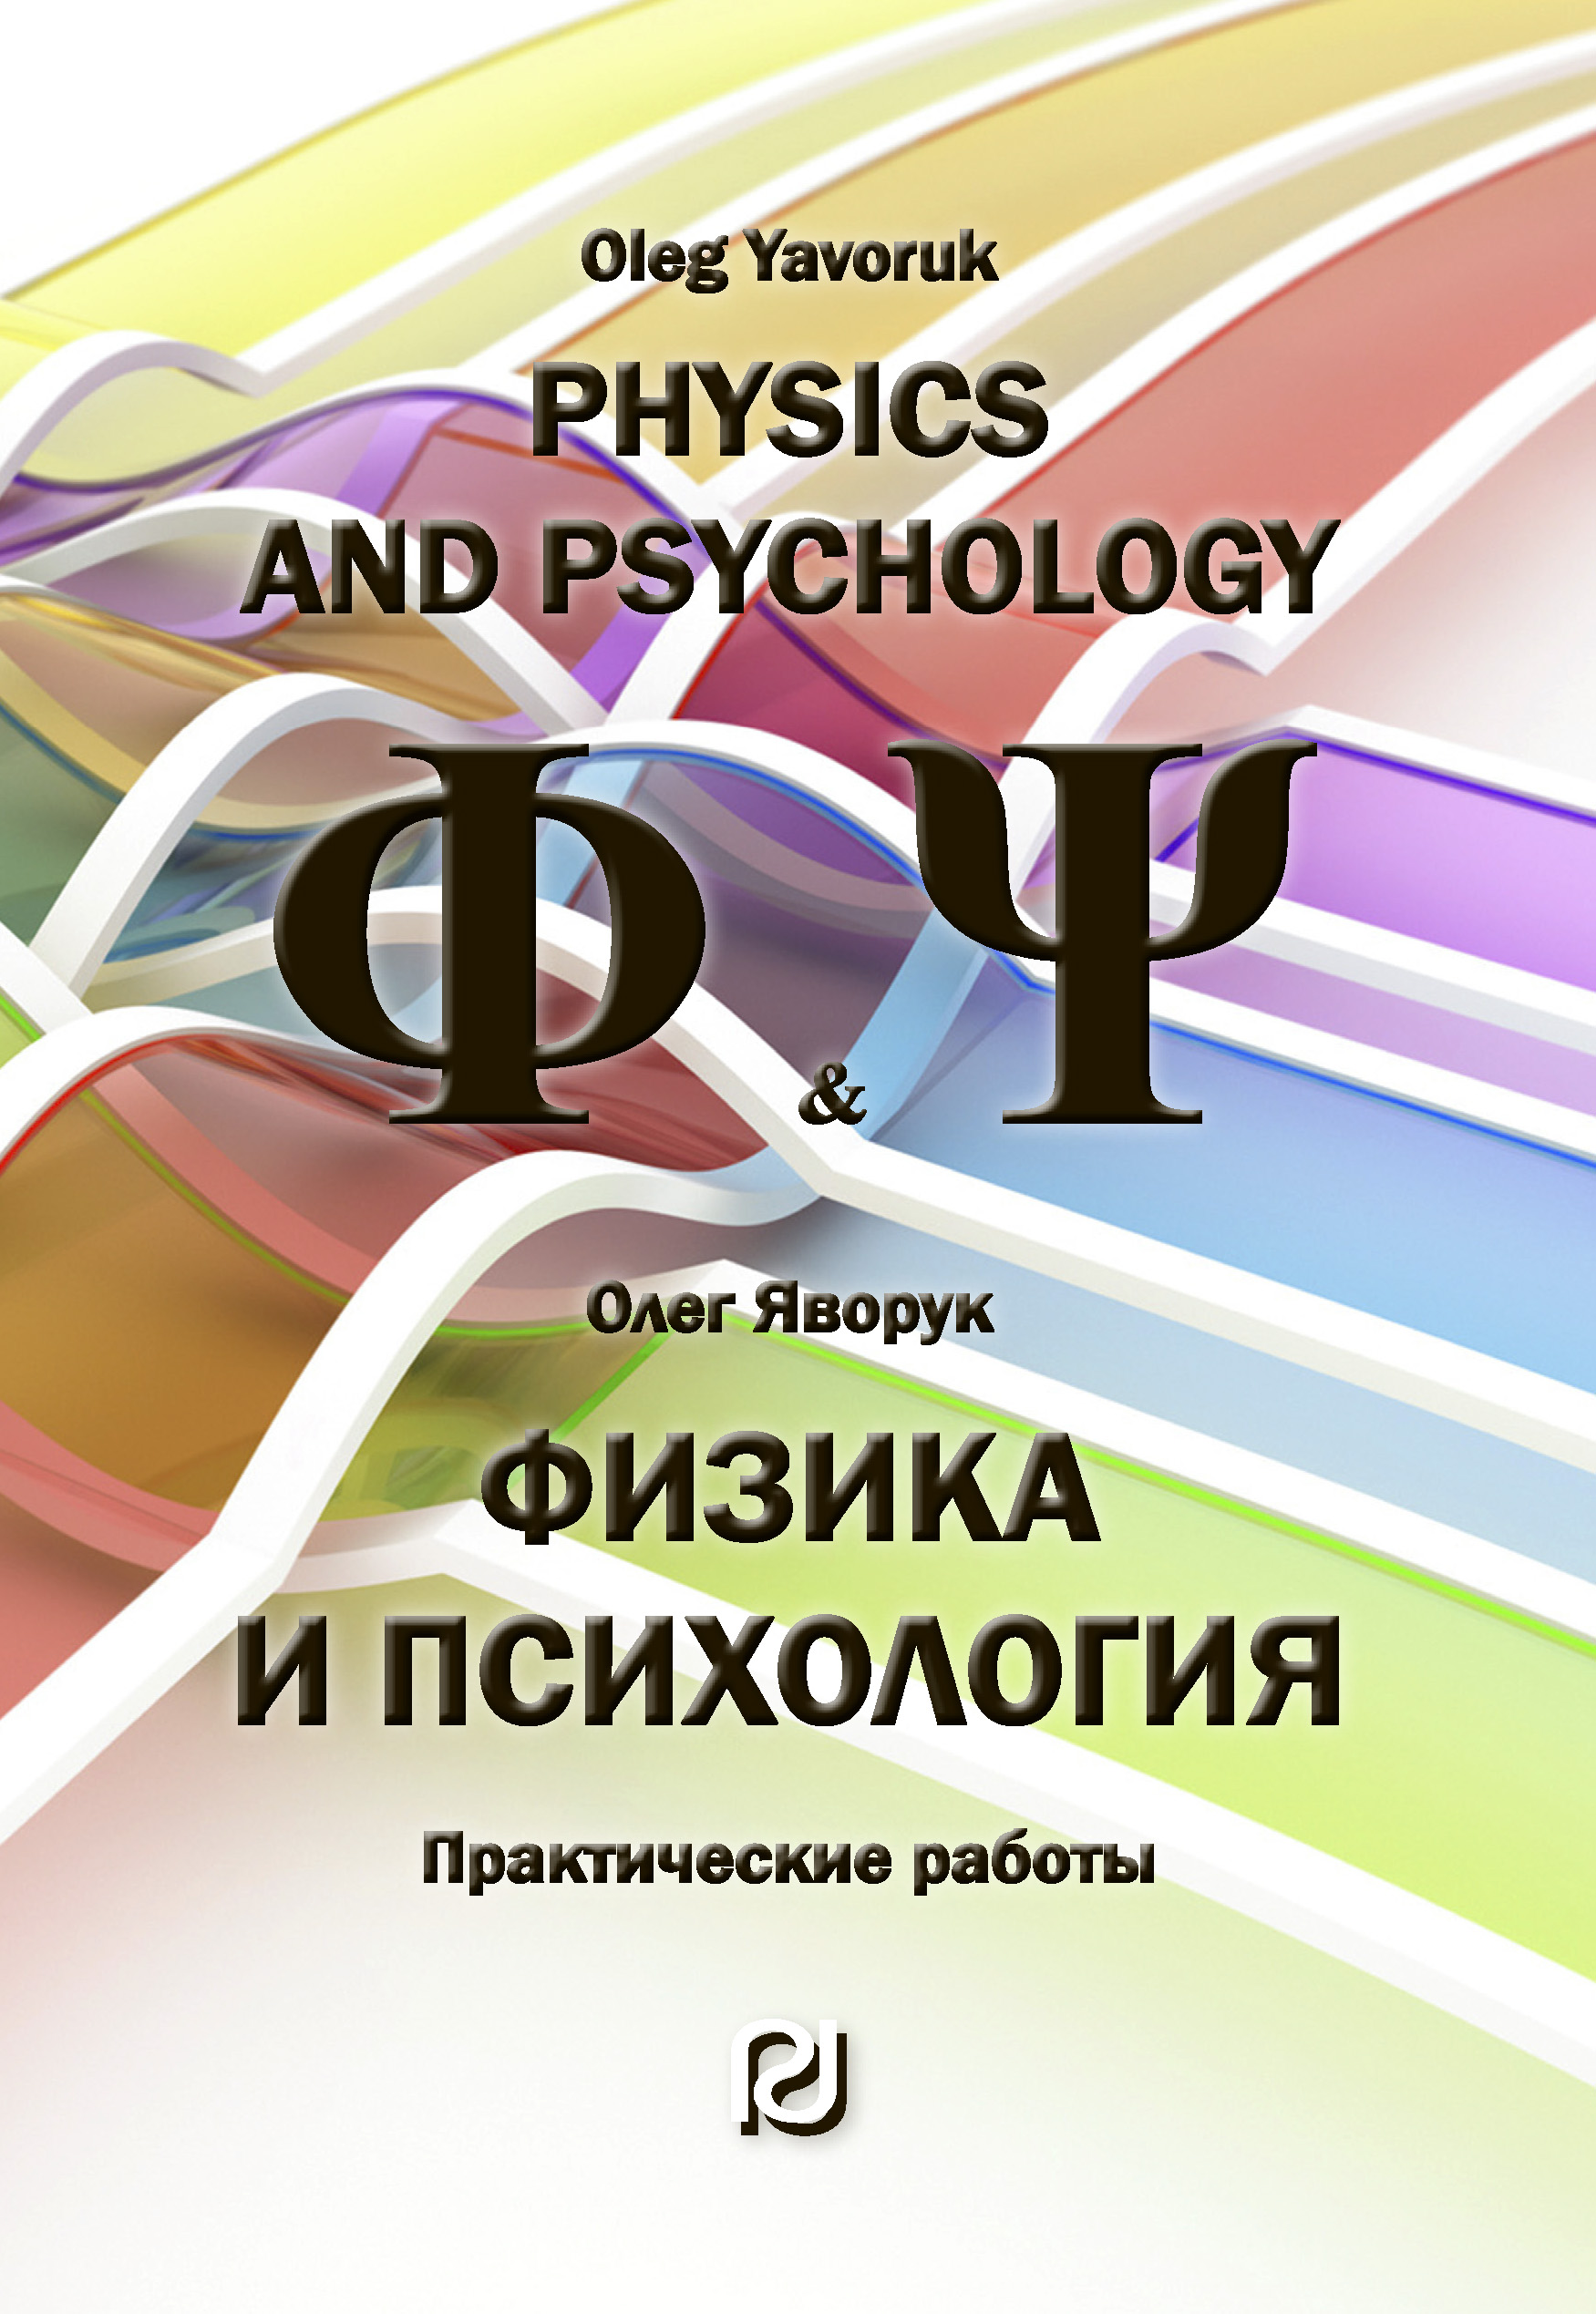             Физика и психология: Практические работы
    